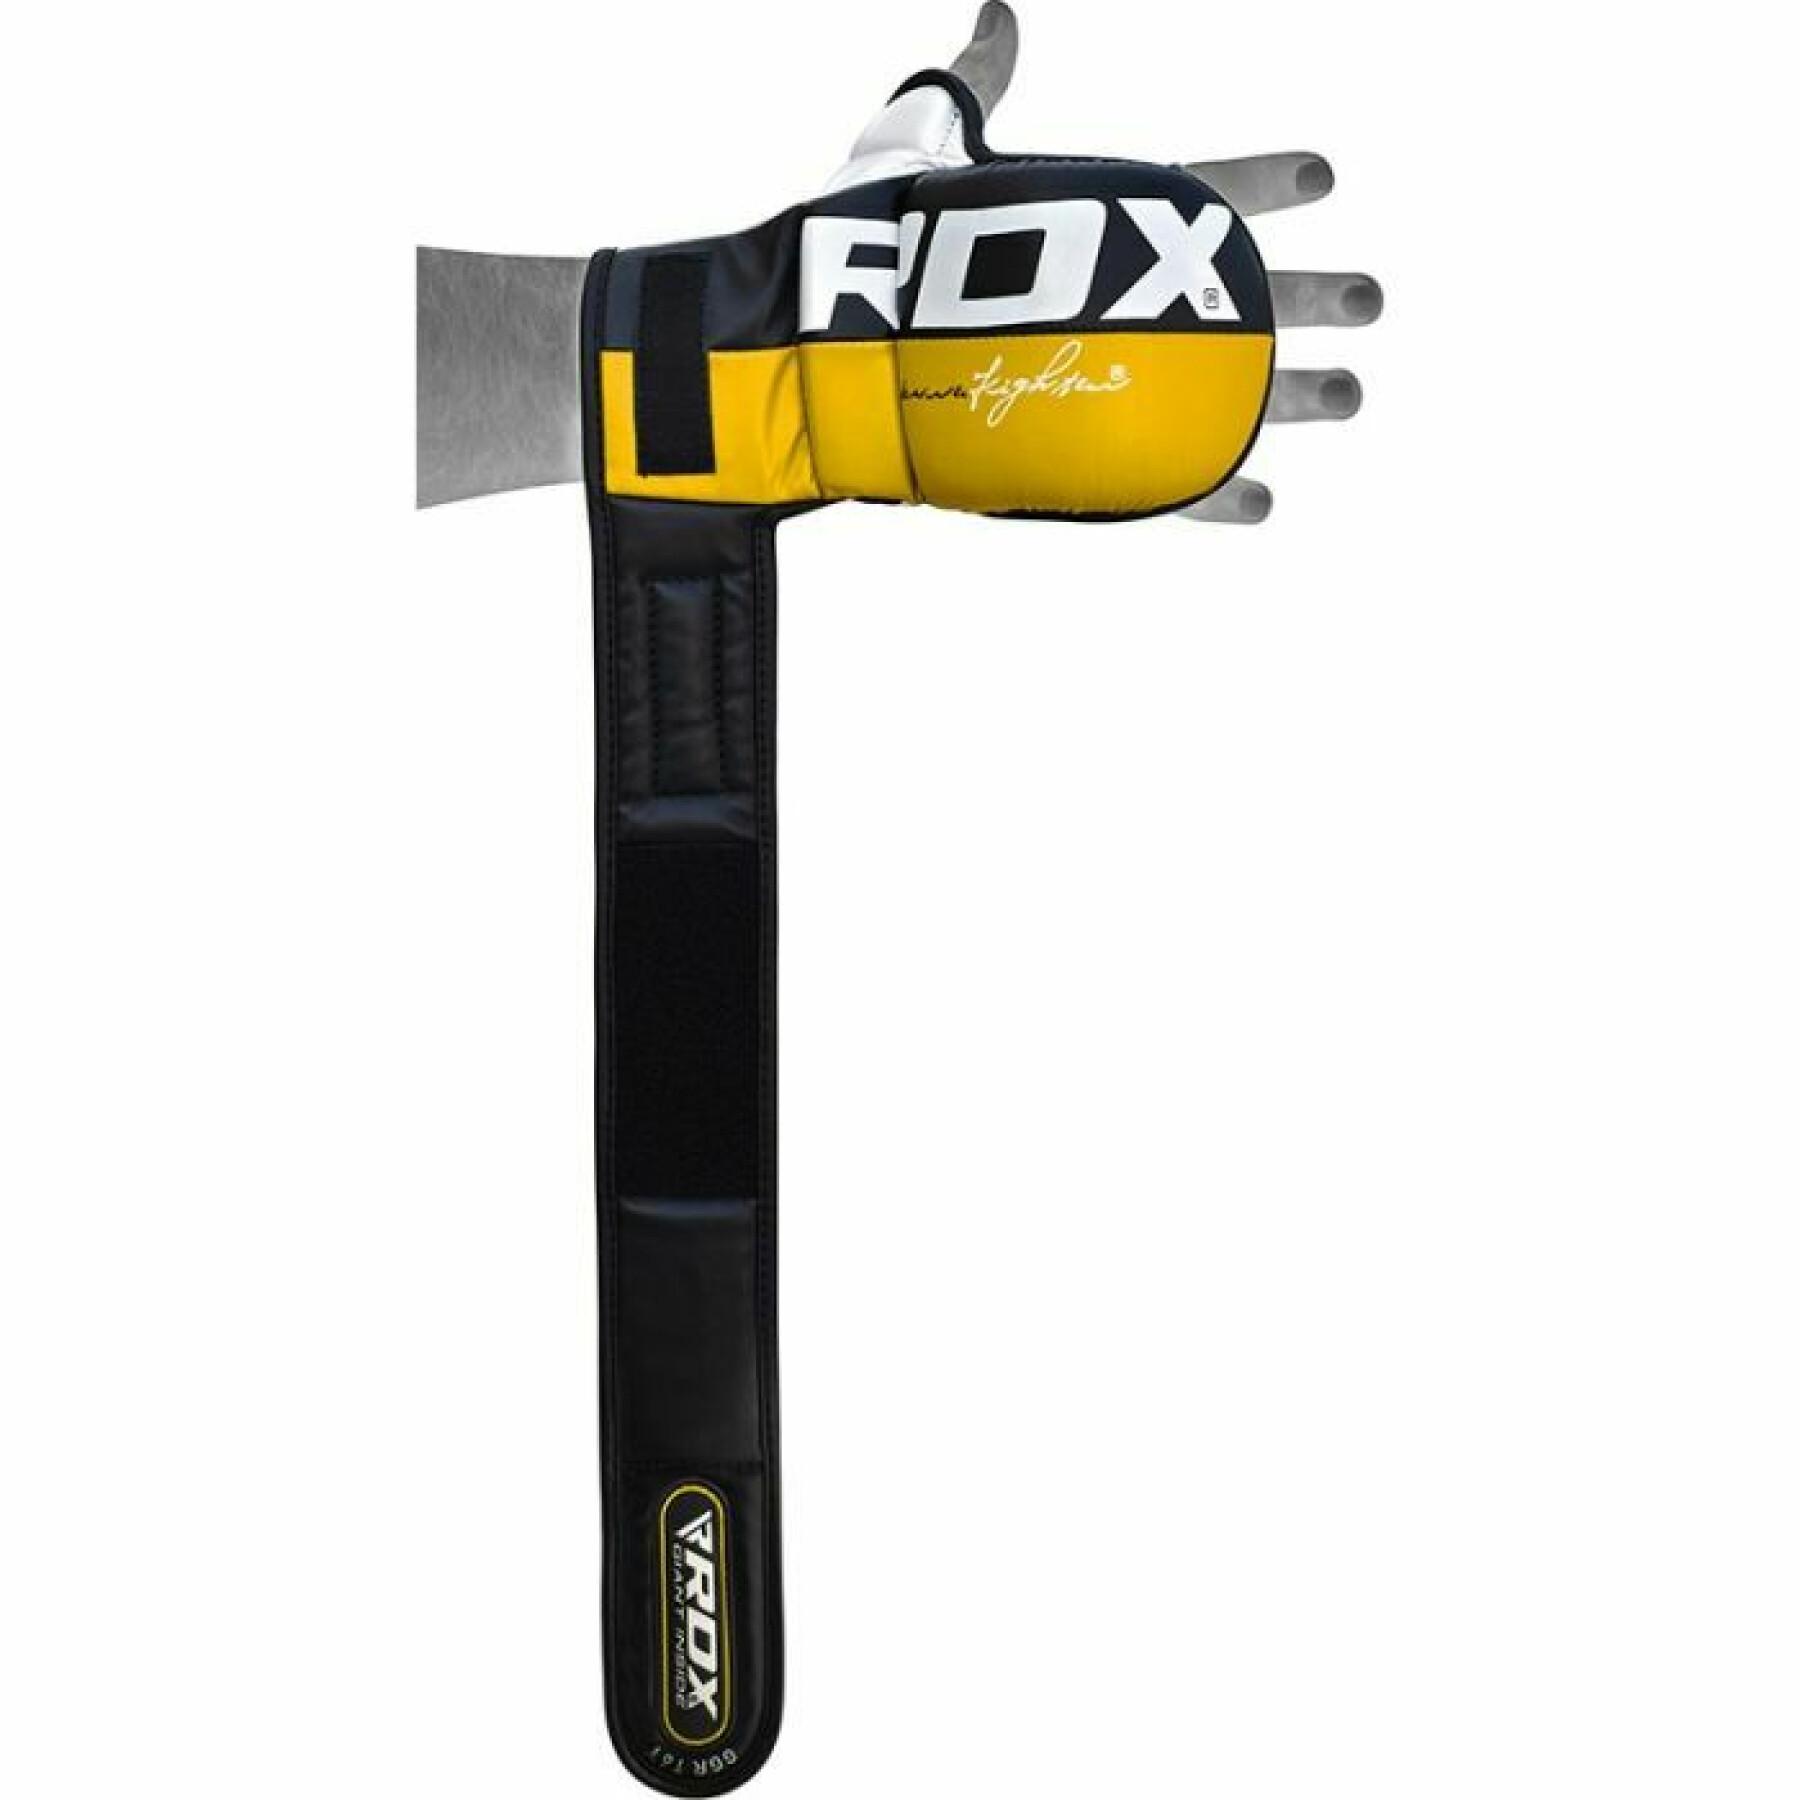 MMA-handskar RDX T6